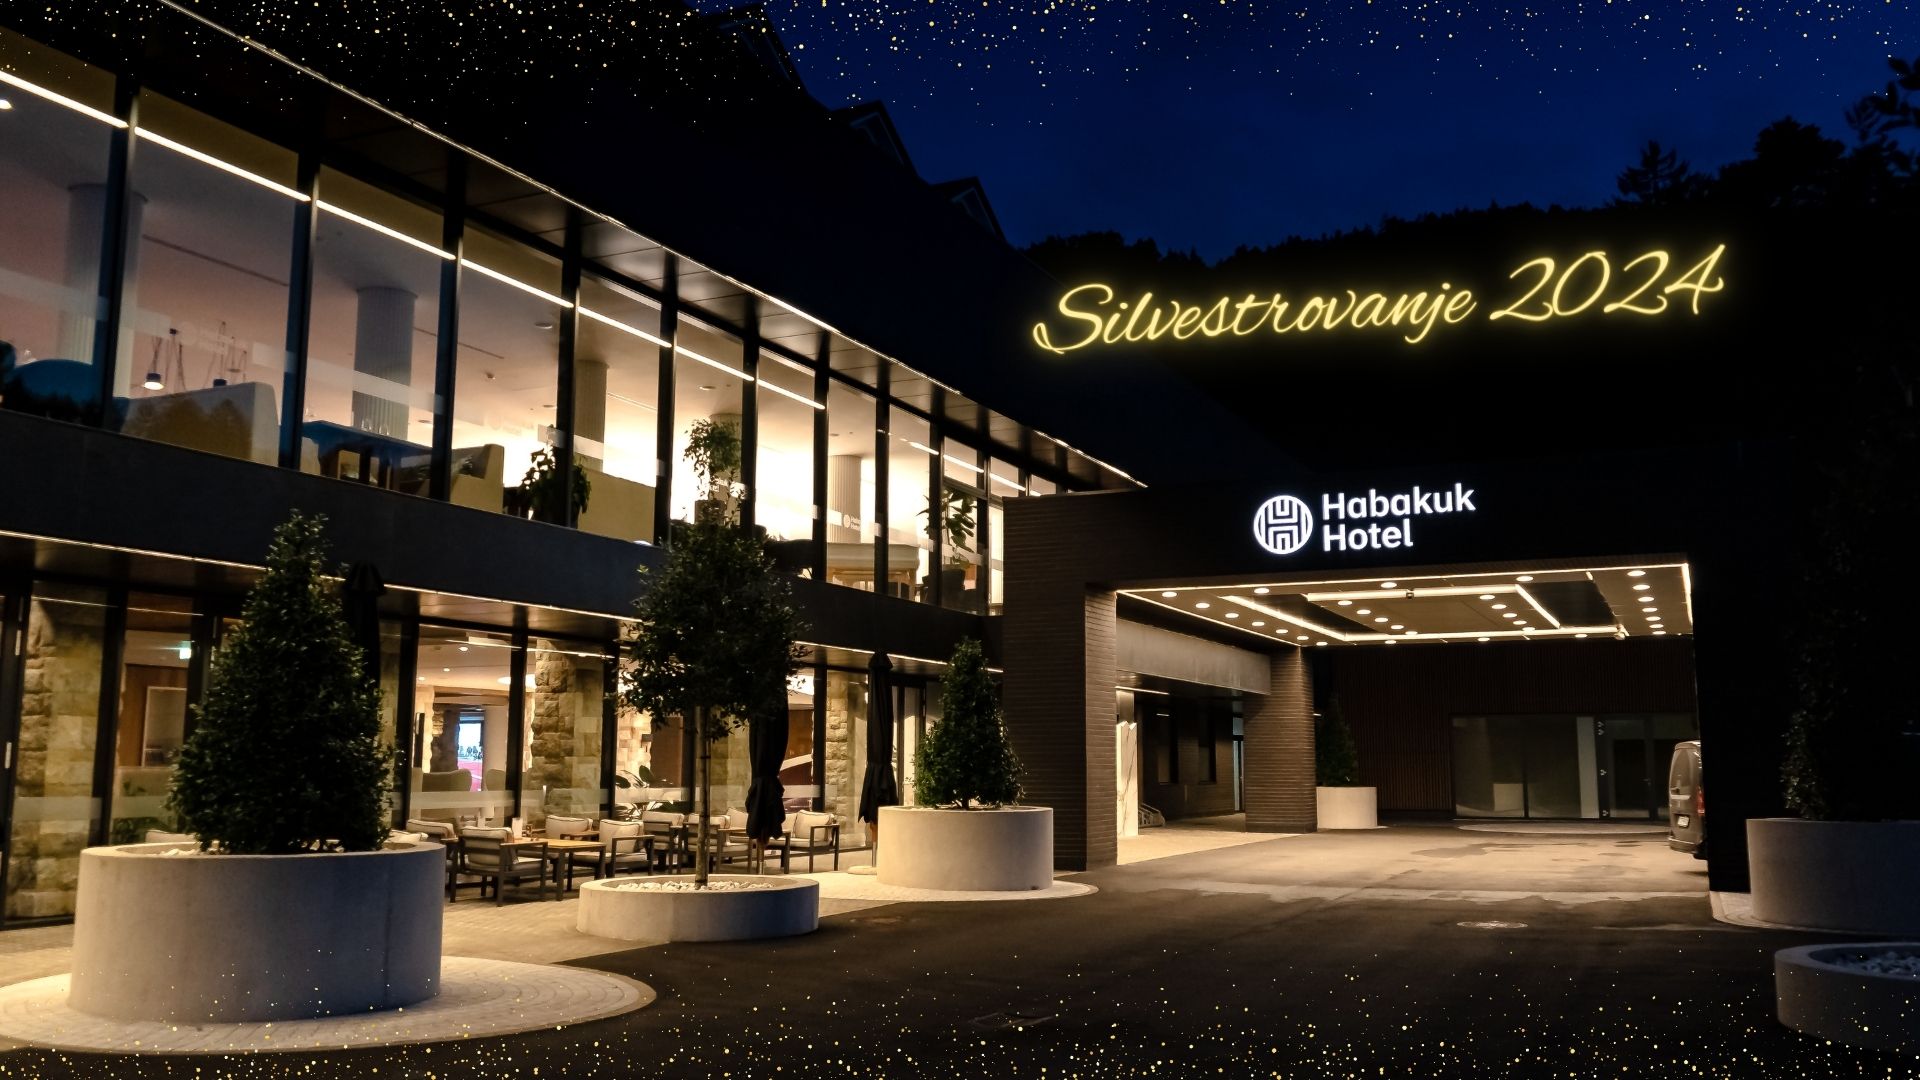 Čaroben začetek 2024: Nepozabno Silvestrovanje v Hotelu Habakuk